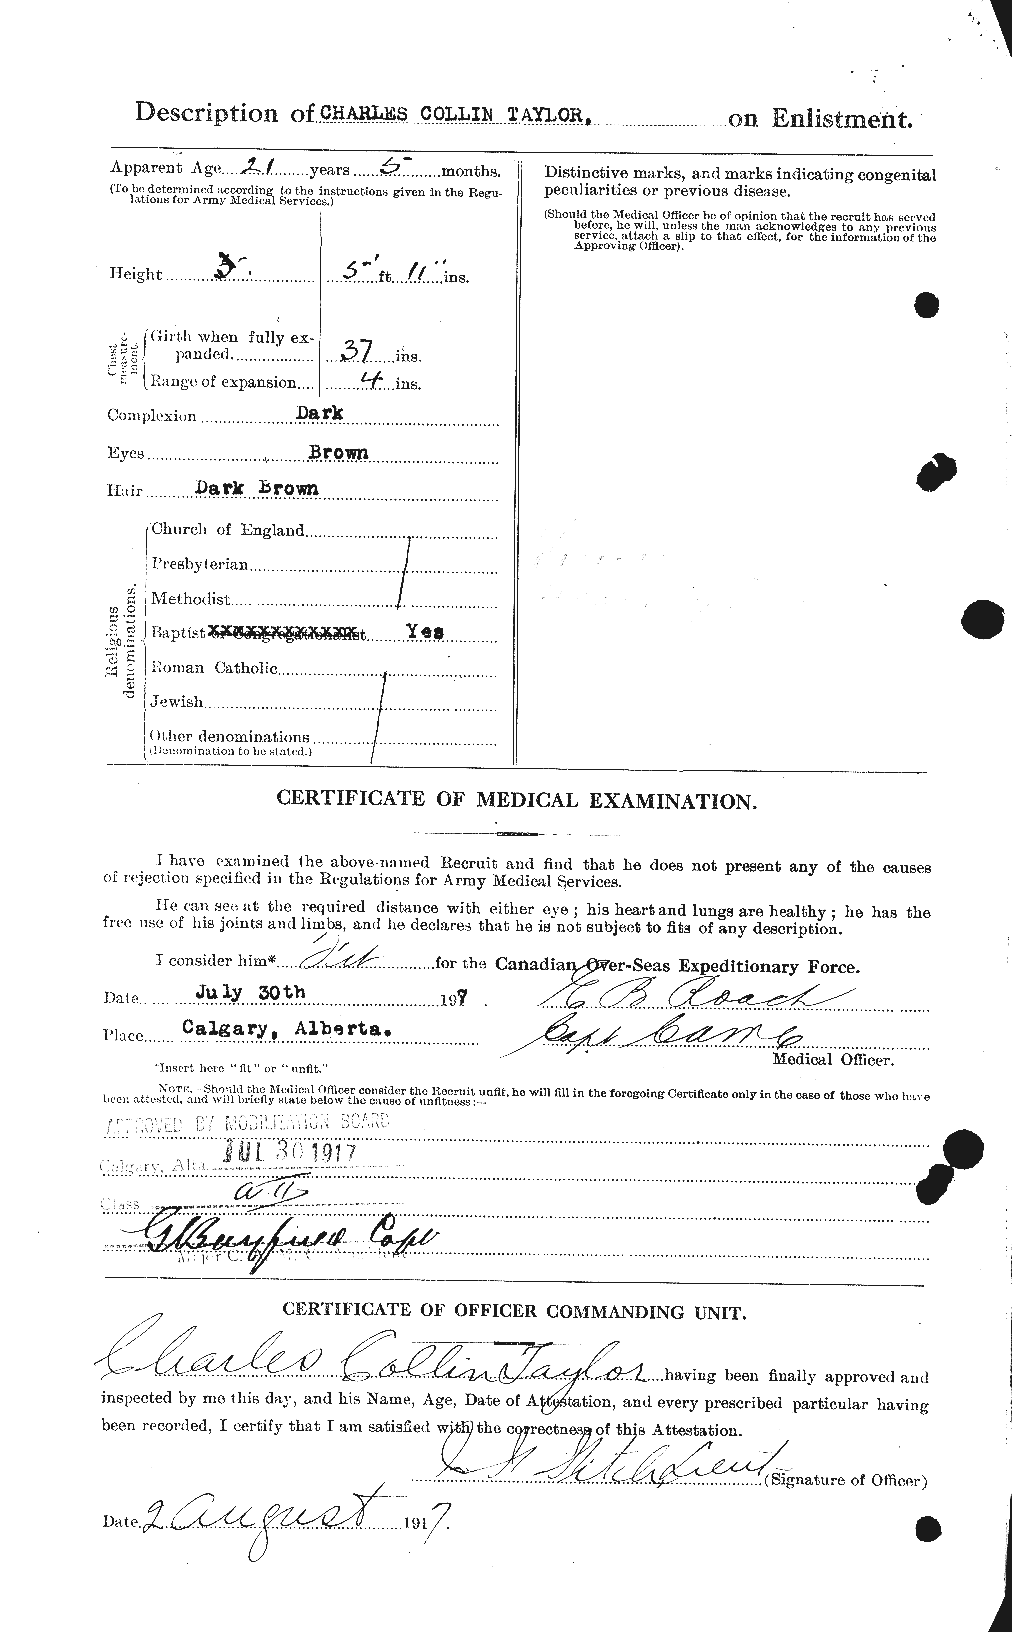 Dossiers du Personnel de la Première Guerre mondiale - CEC 626834b